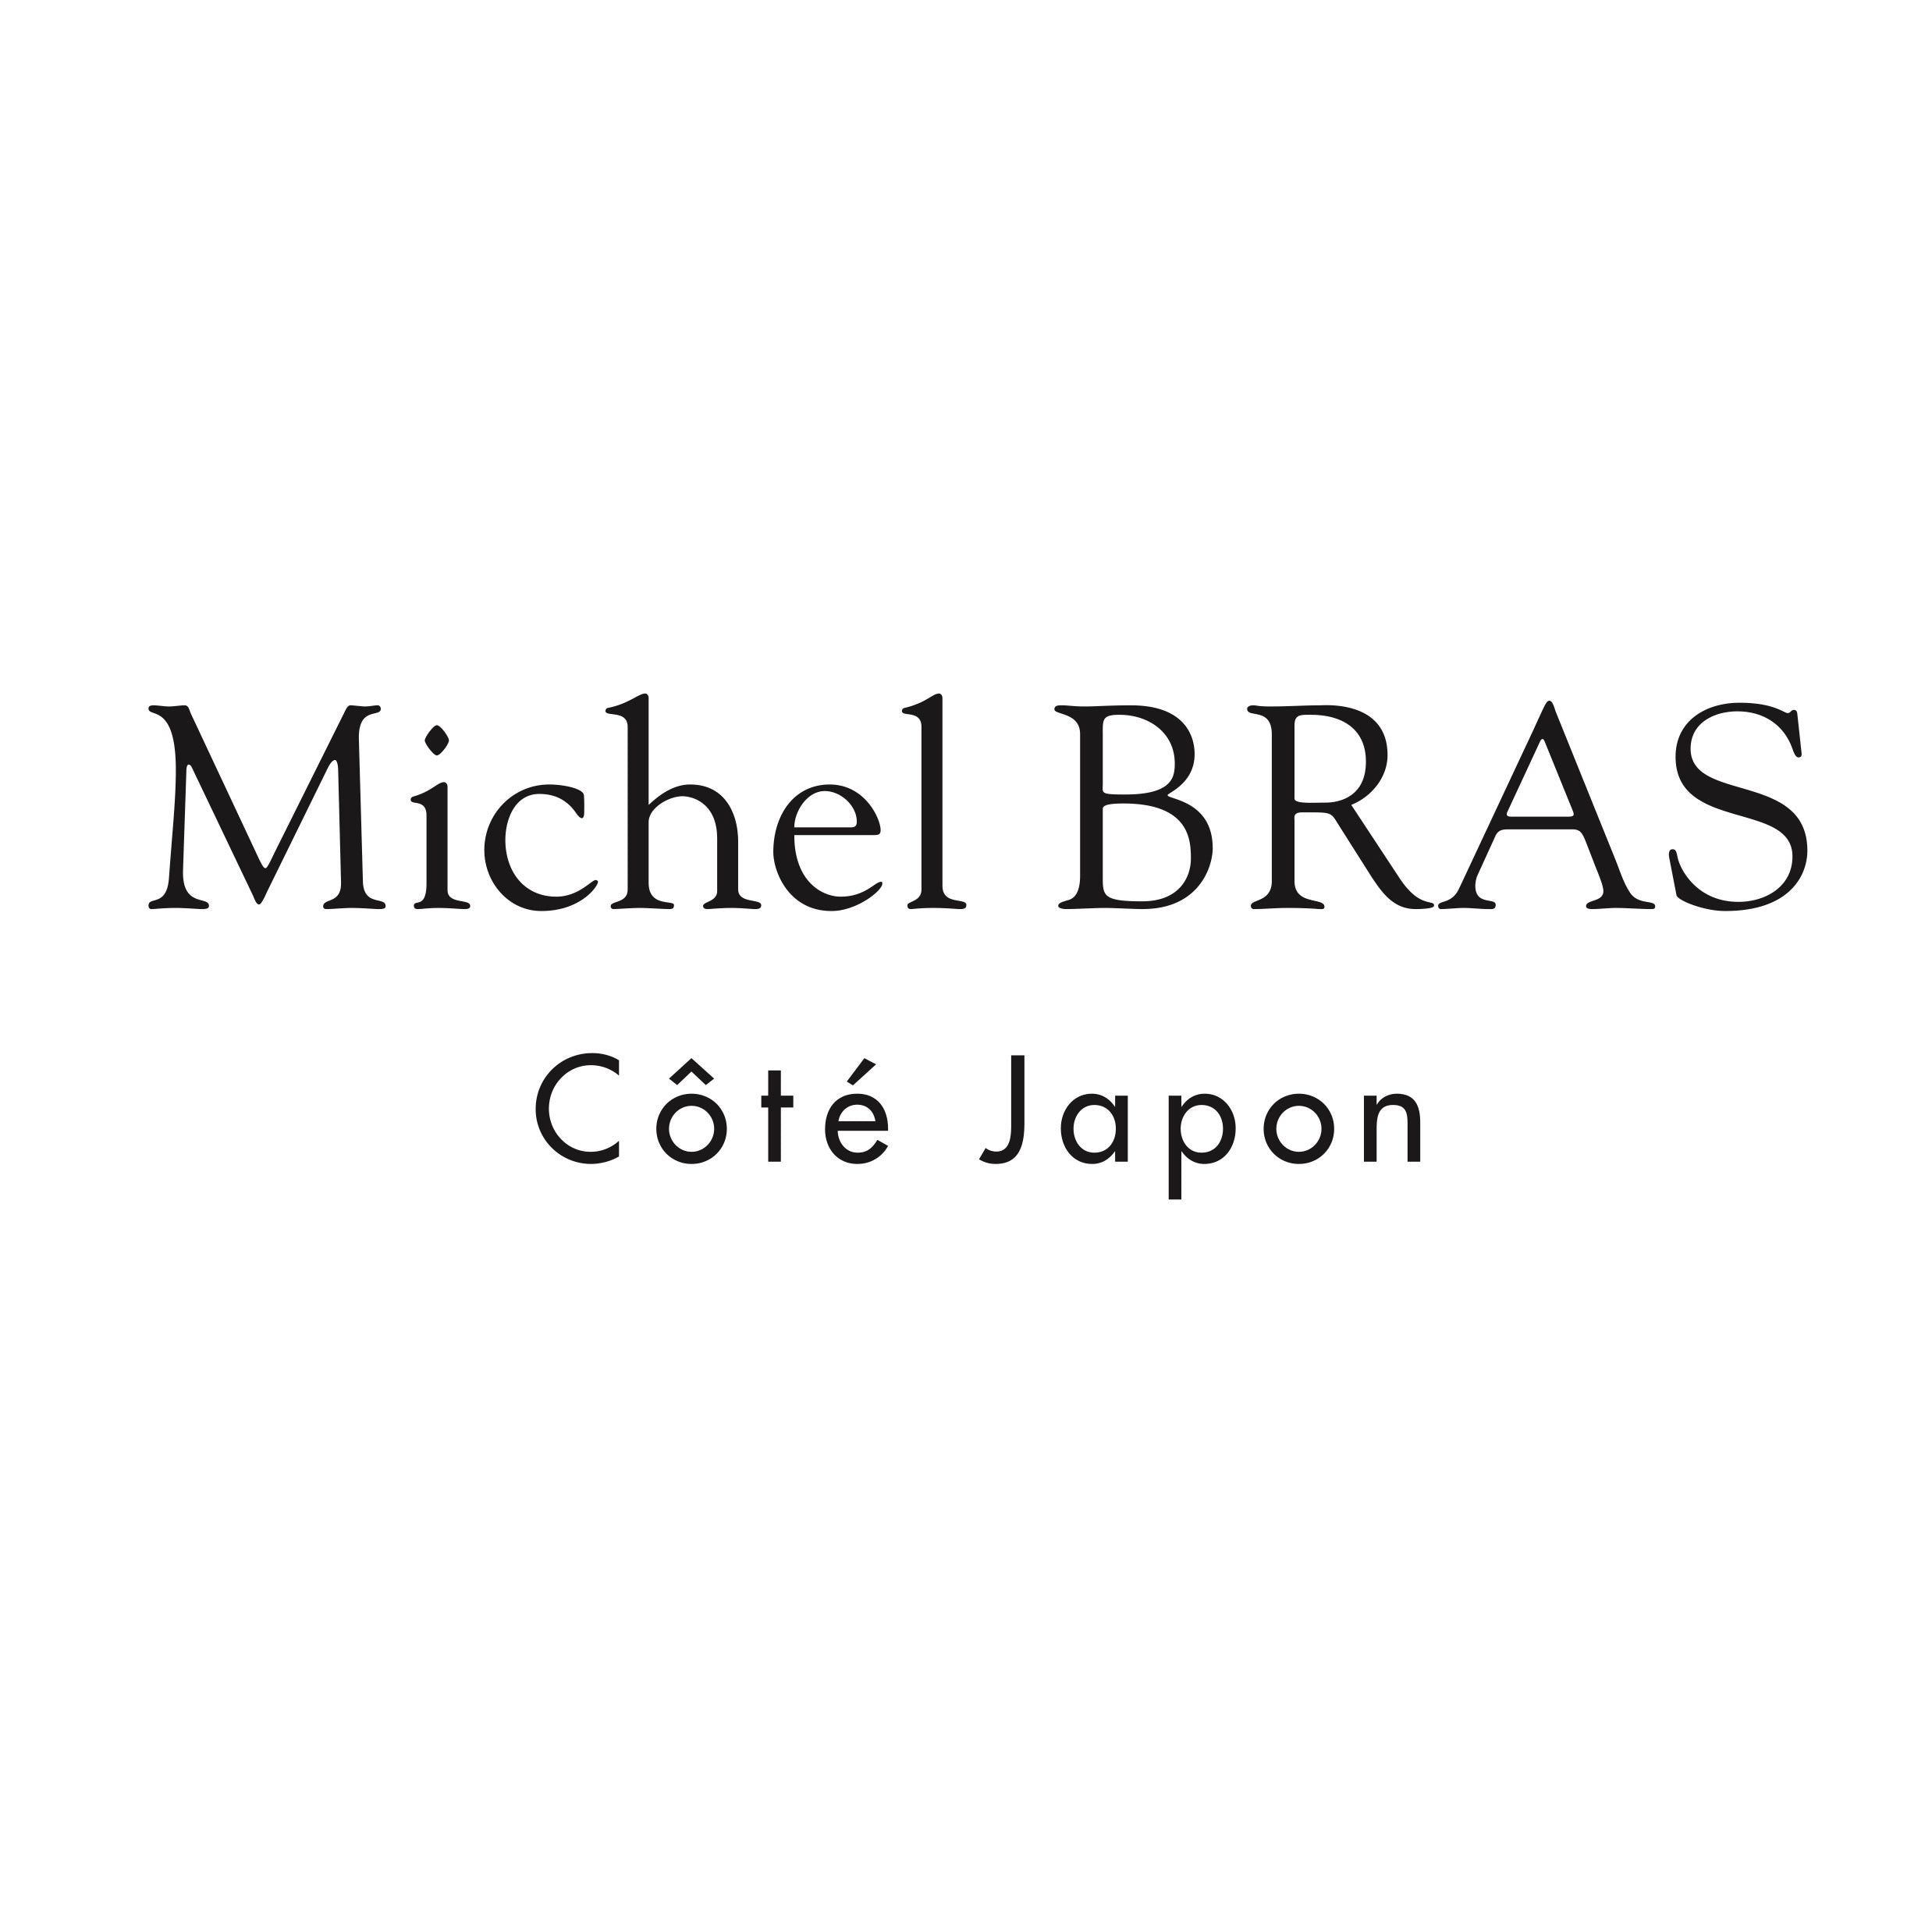 Michel BRAS Côté Japon